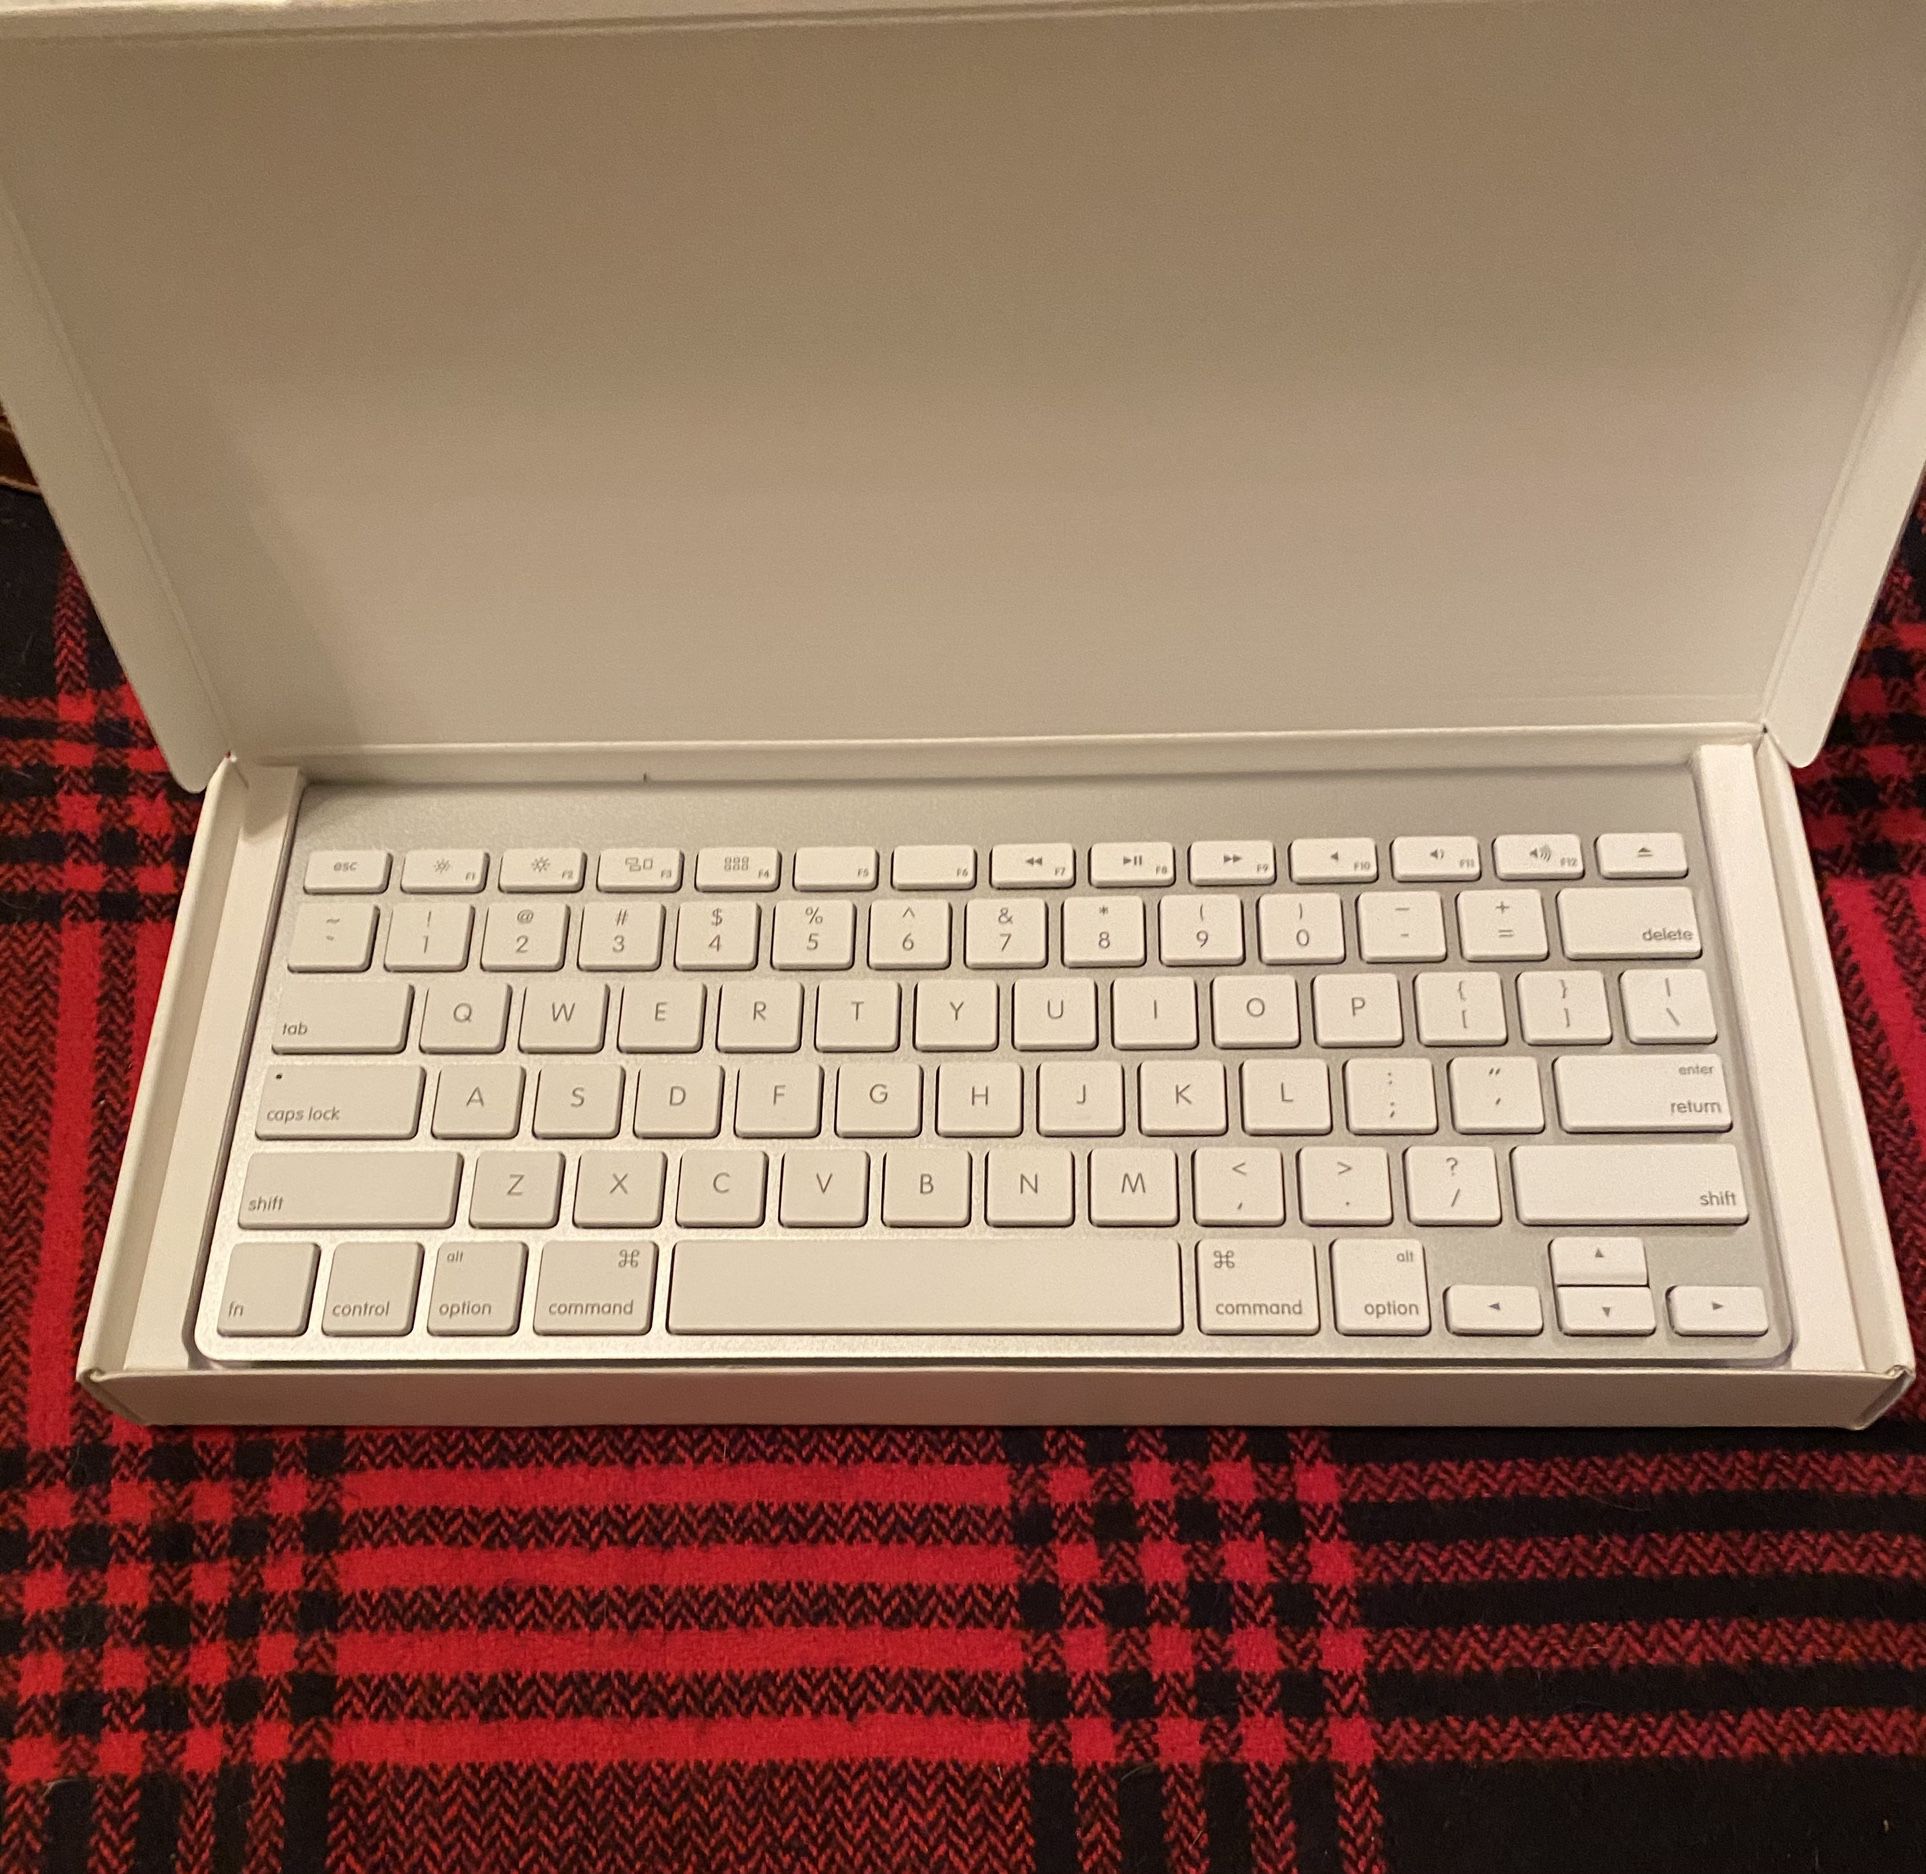 Apple Wireless Keyboard - New In Box